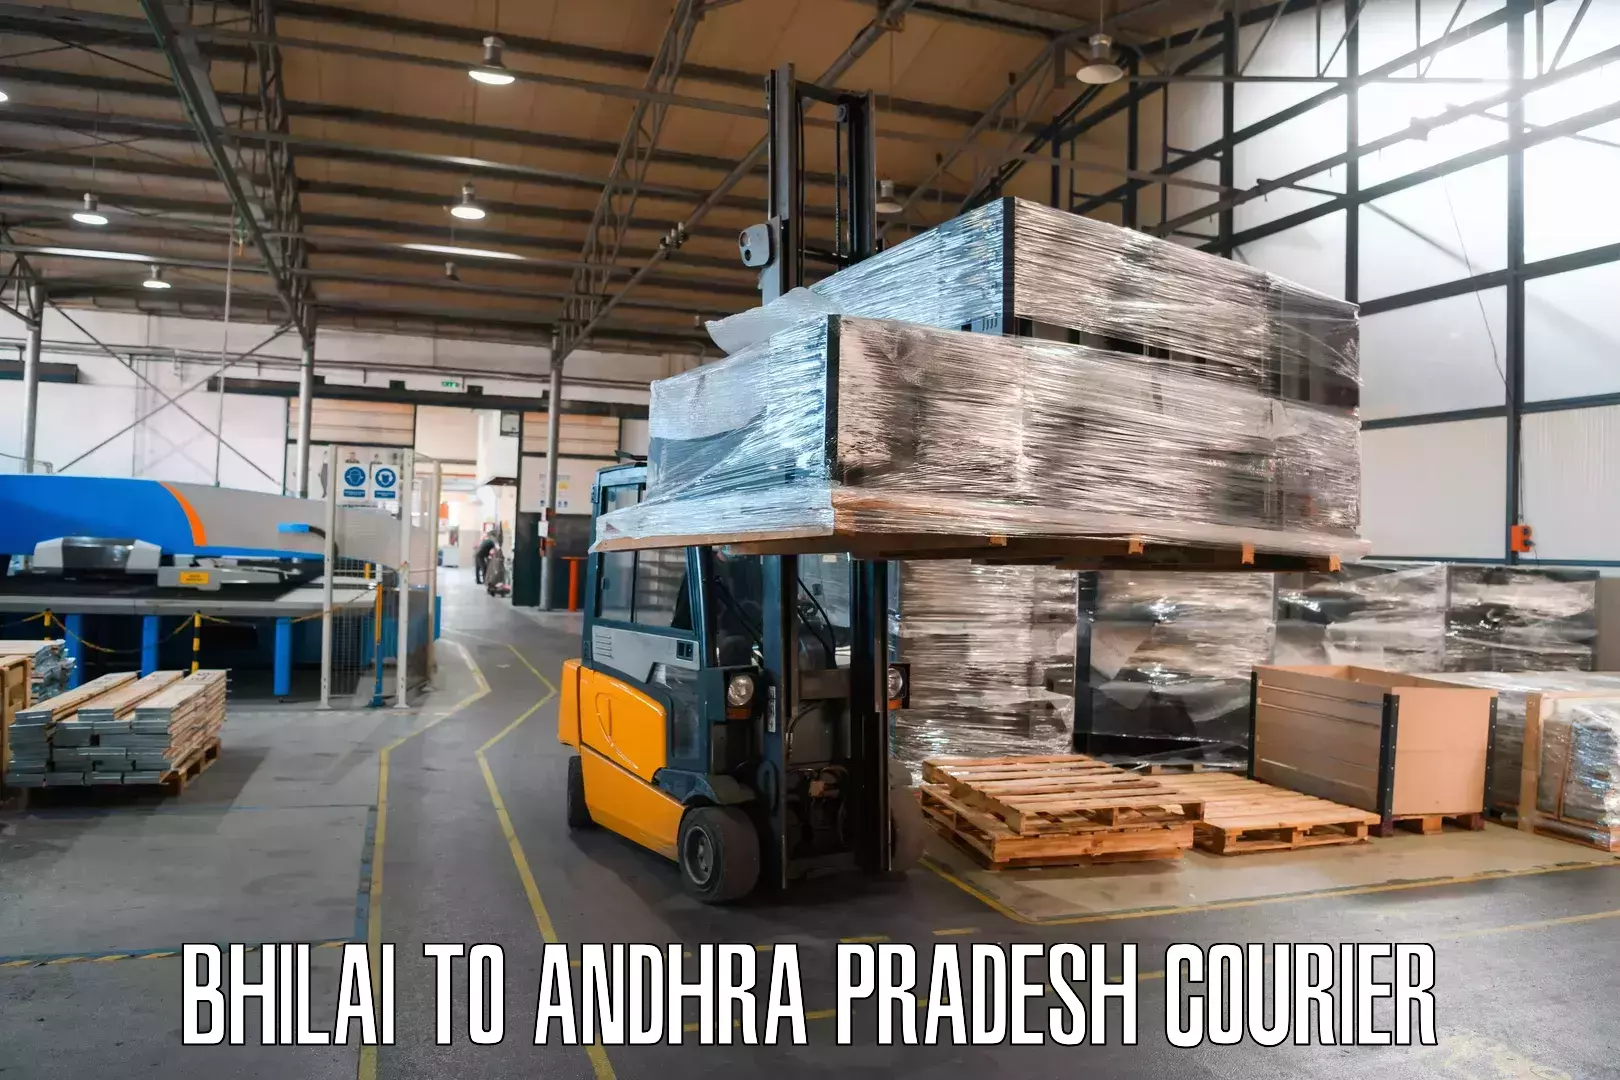 Reliable courier service Bhilai to Andhra Pradesh